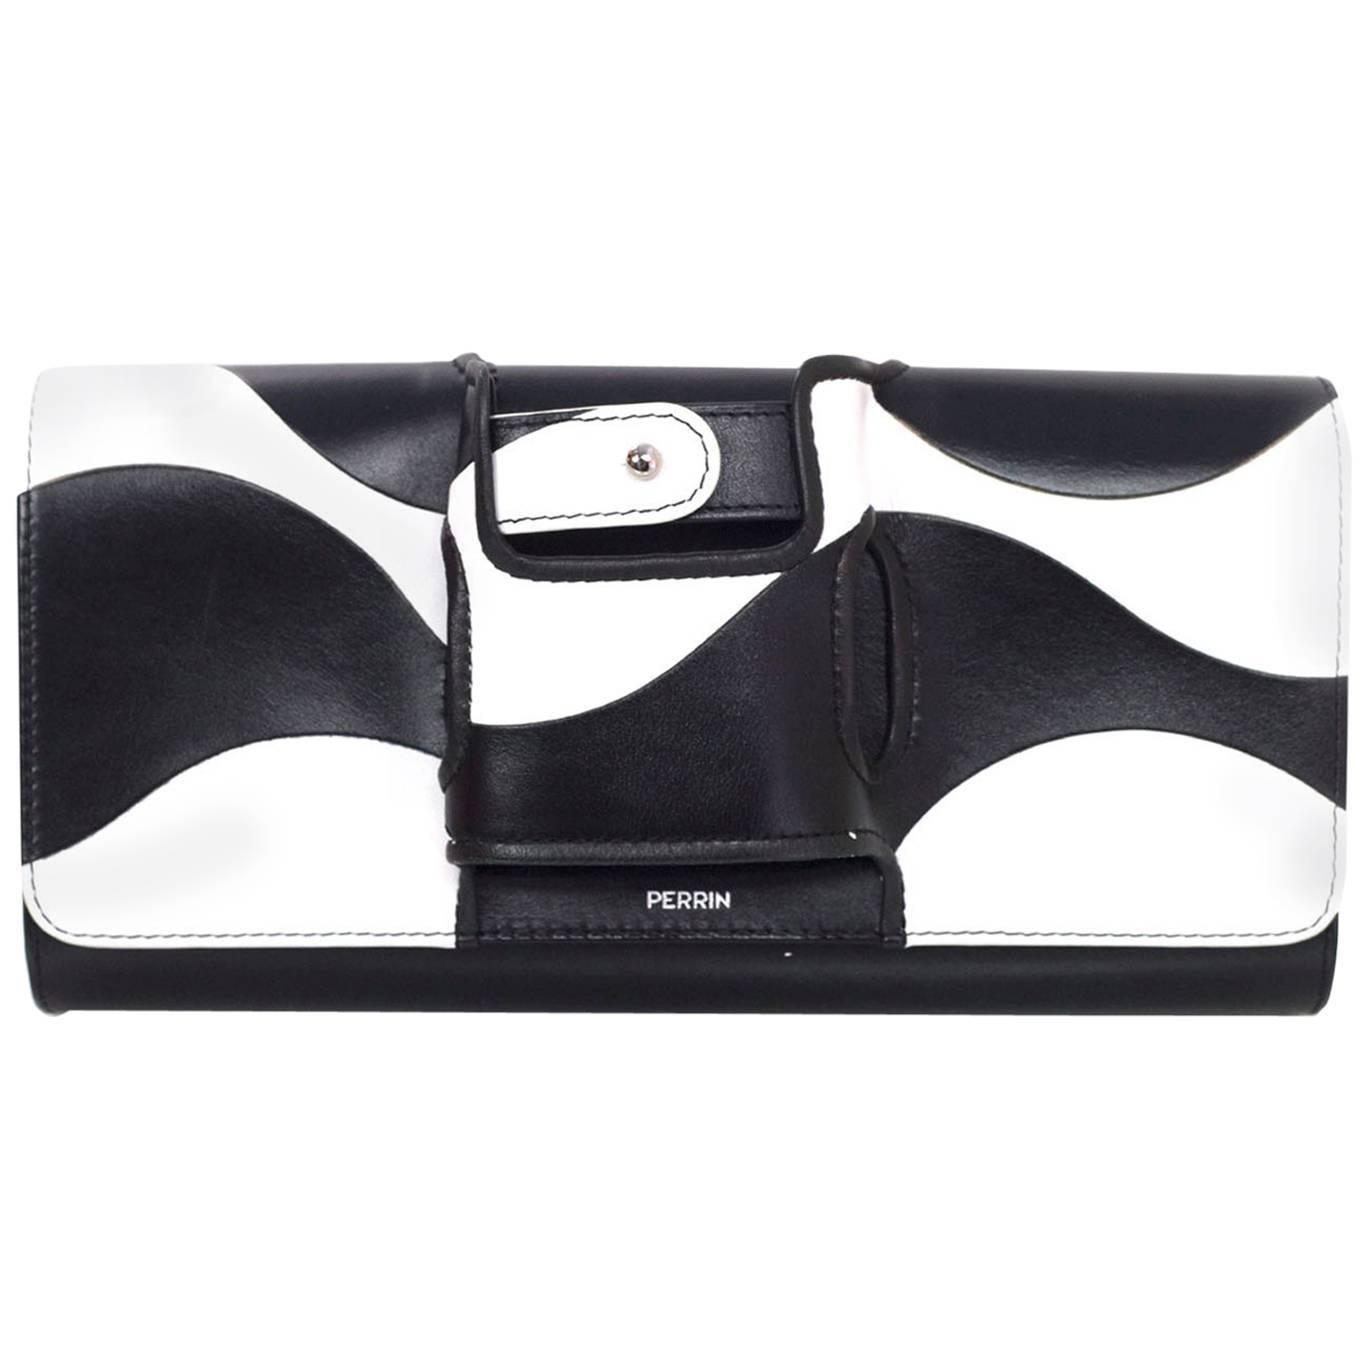 Perrin Black & White Mod La Vague La Capitale Glove Clutch Bag rt. $1, 250